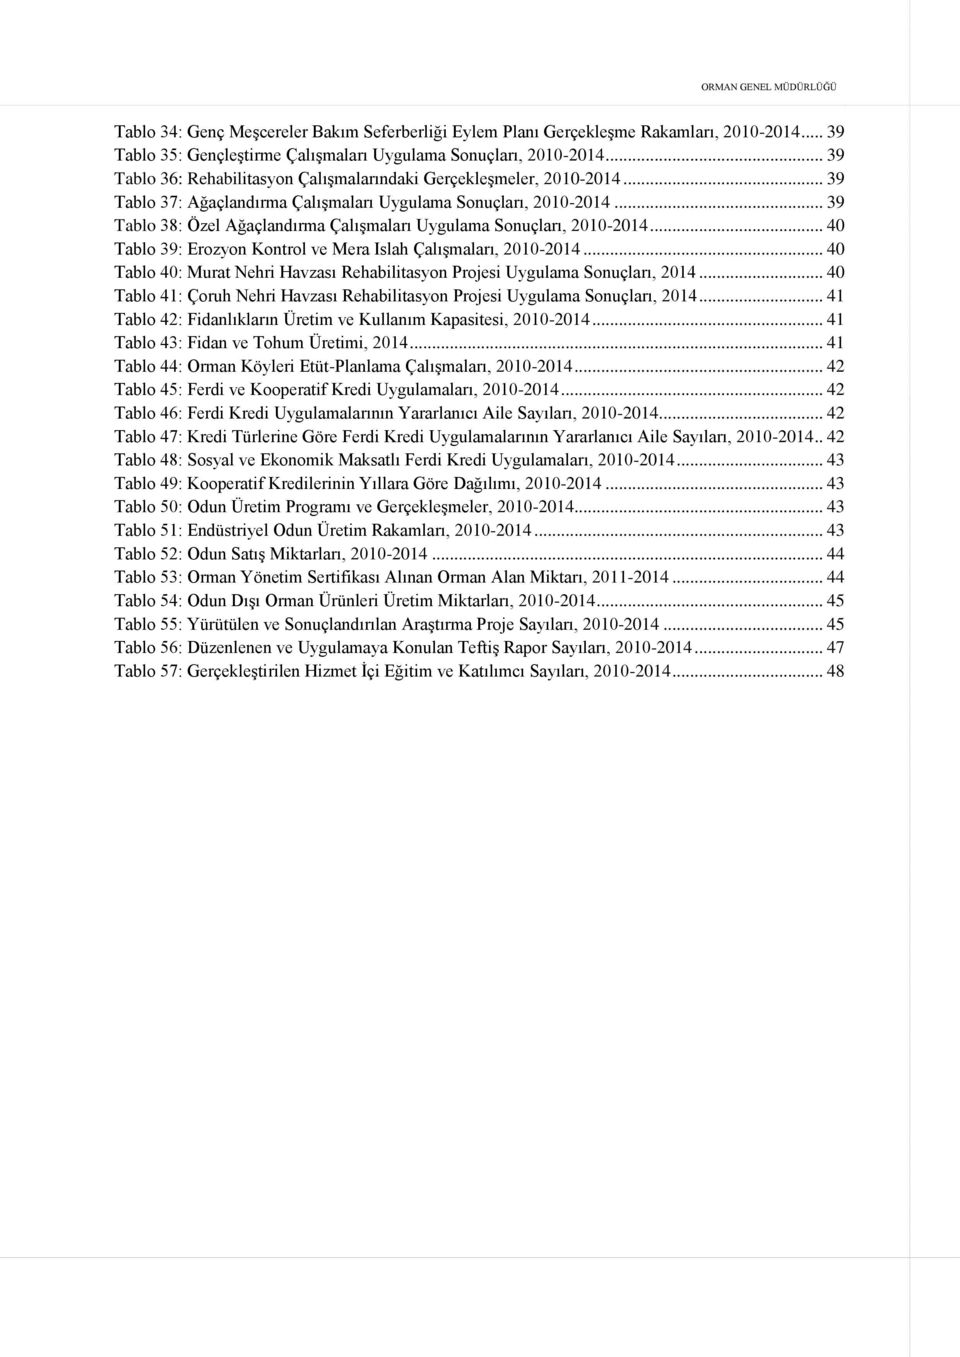 .. 39 Tablo 38: Özel Ağaçlandırma Çalışmaları Uygulama Sonuçları, 2010-2014... 40 Tablo 39: Erozyon Kontrol ve Mera Islah Çalışmaları, 2010-2014.